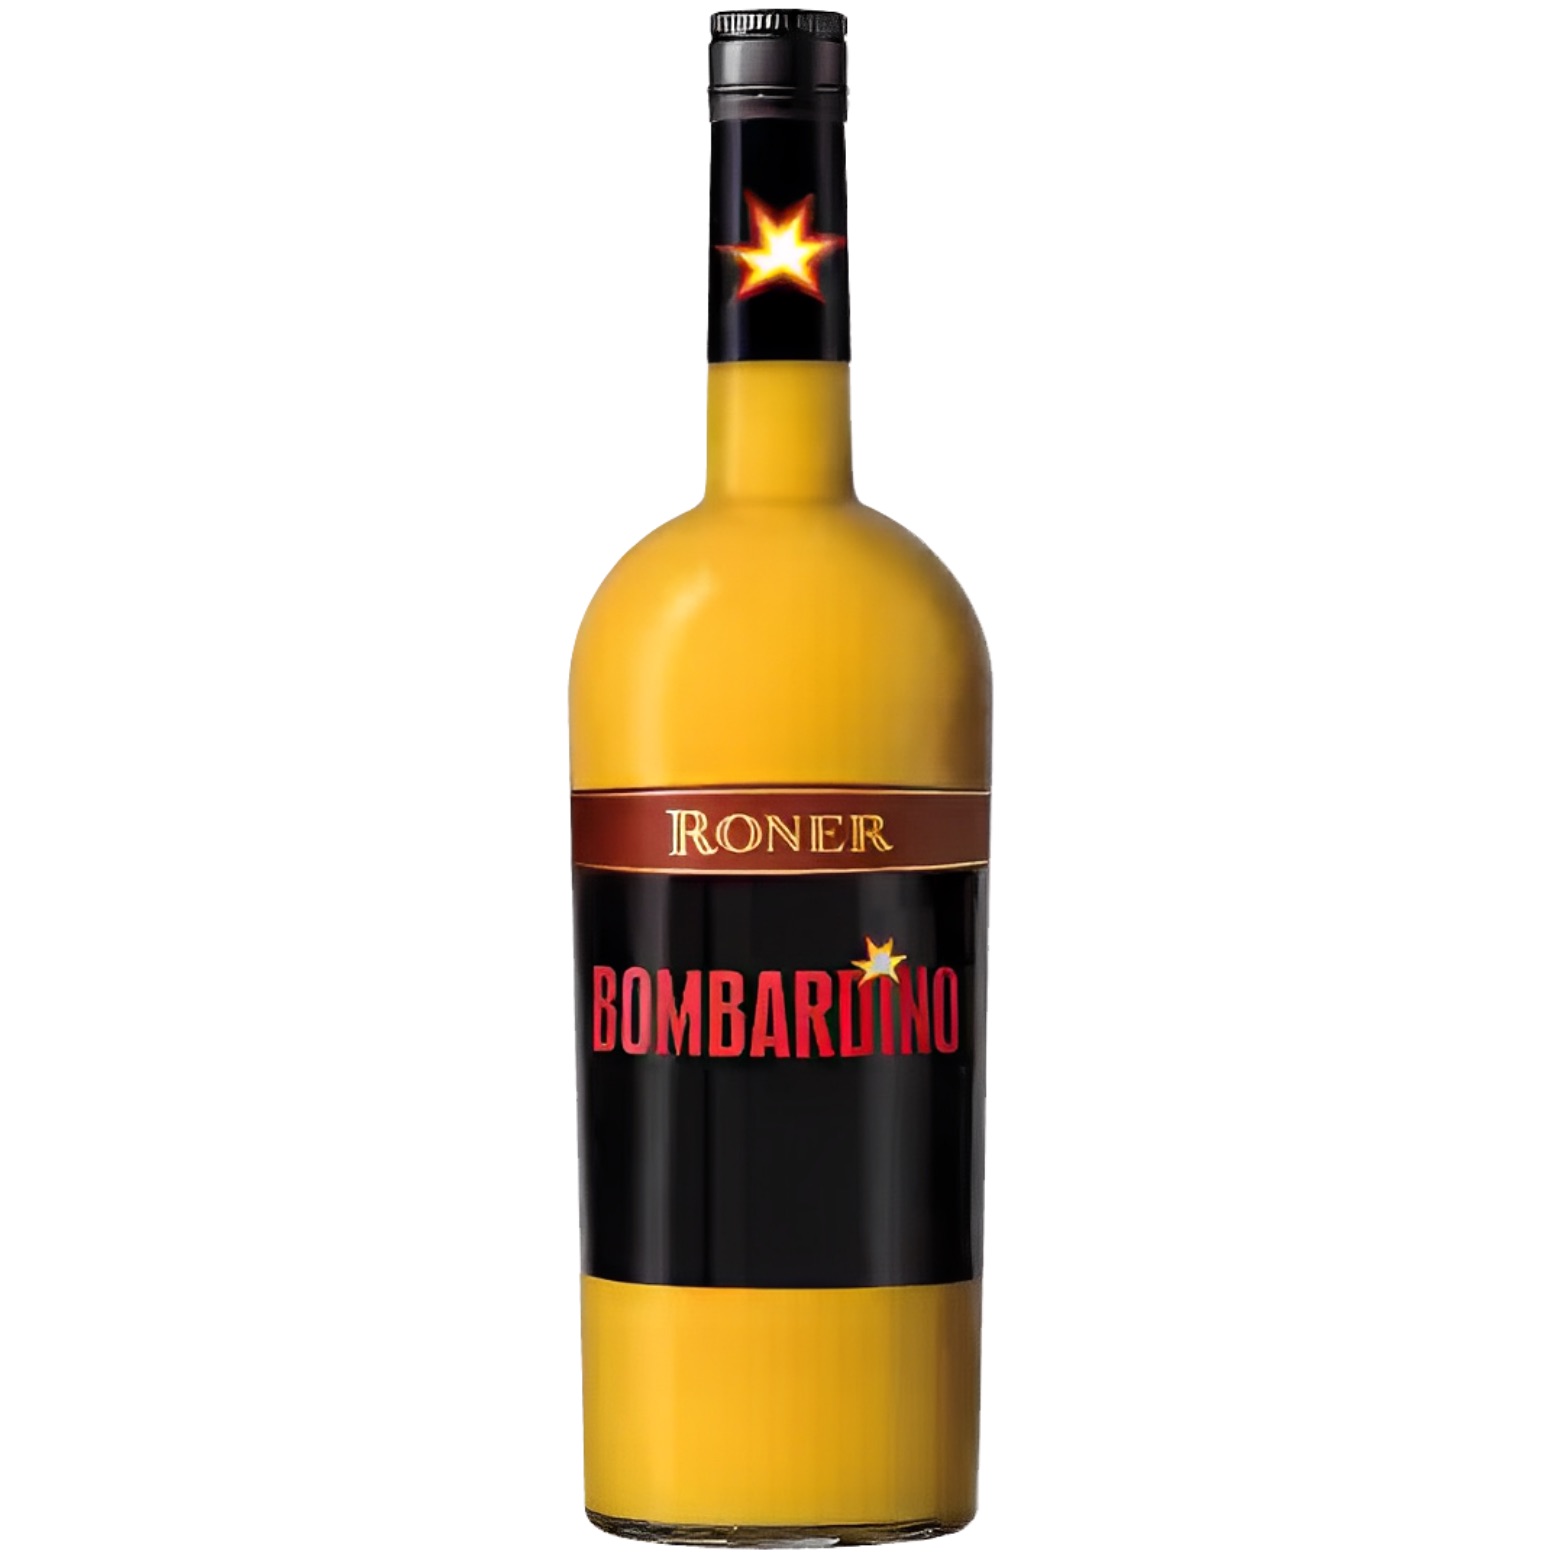 Bombardino, cremiger Eierlikör mit Rum “Roner”, 0,7l